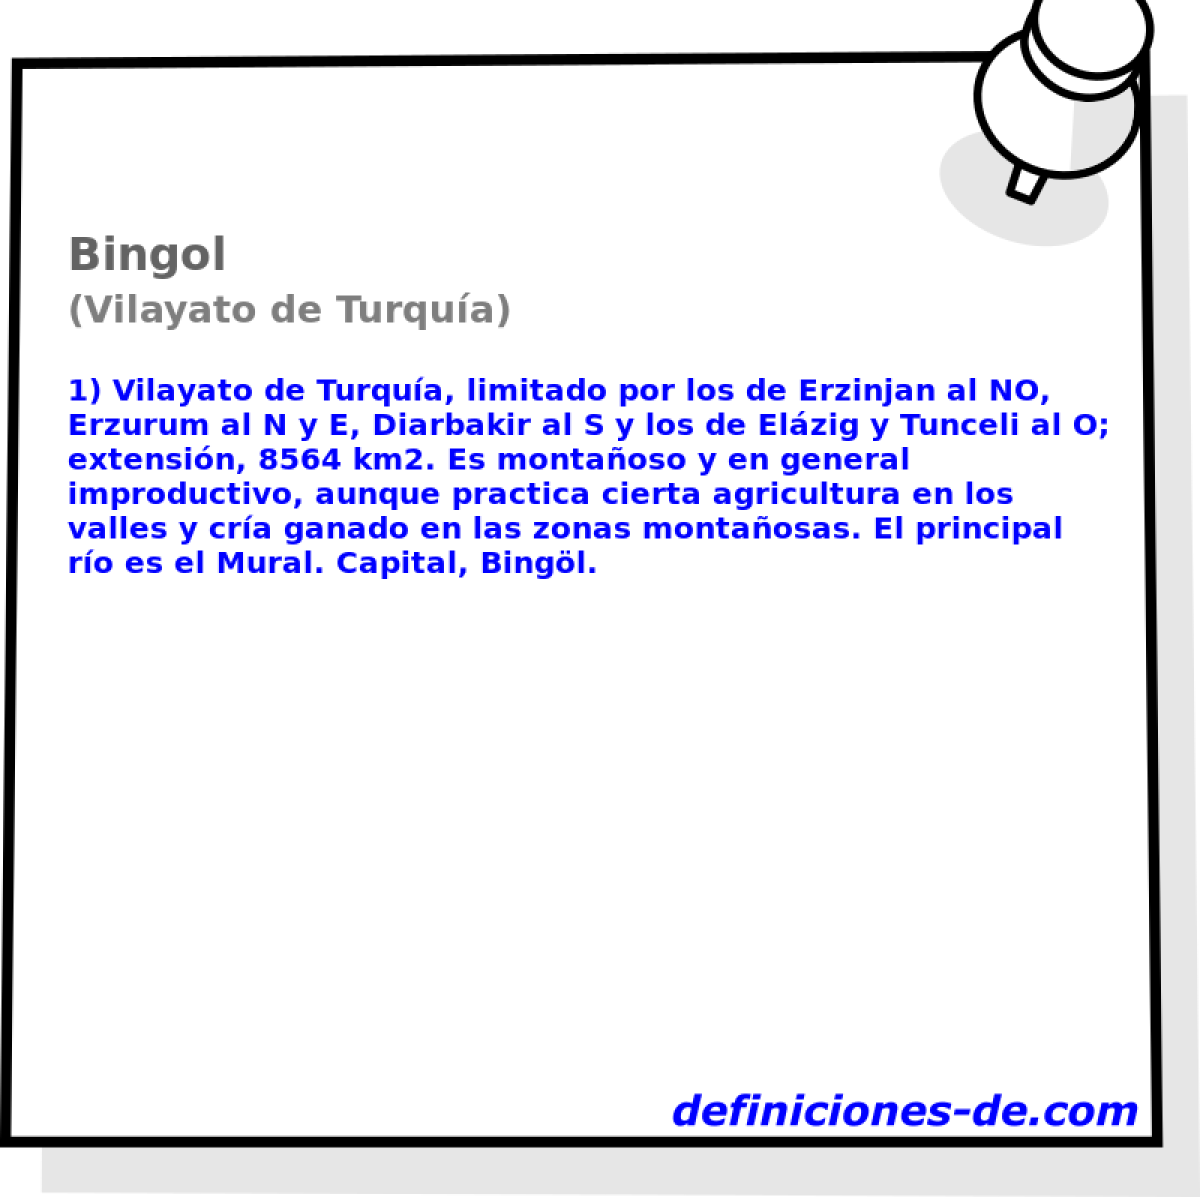 Bingol (Vilayato de Turqua)